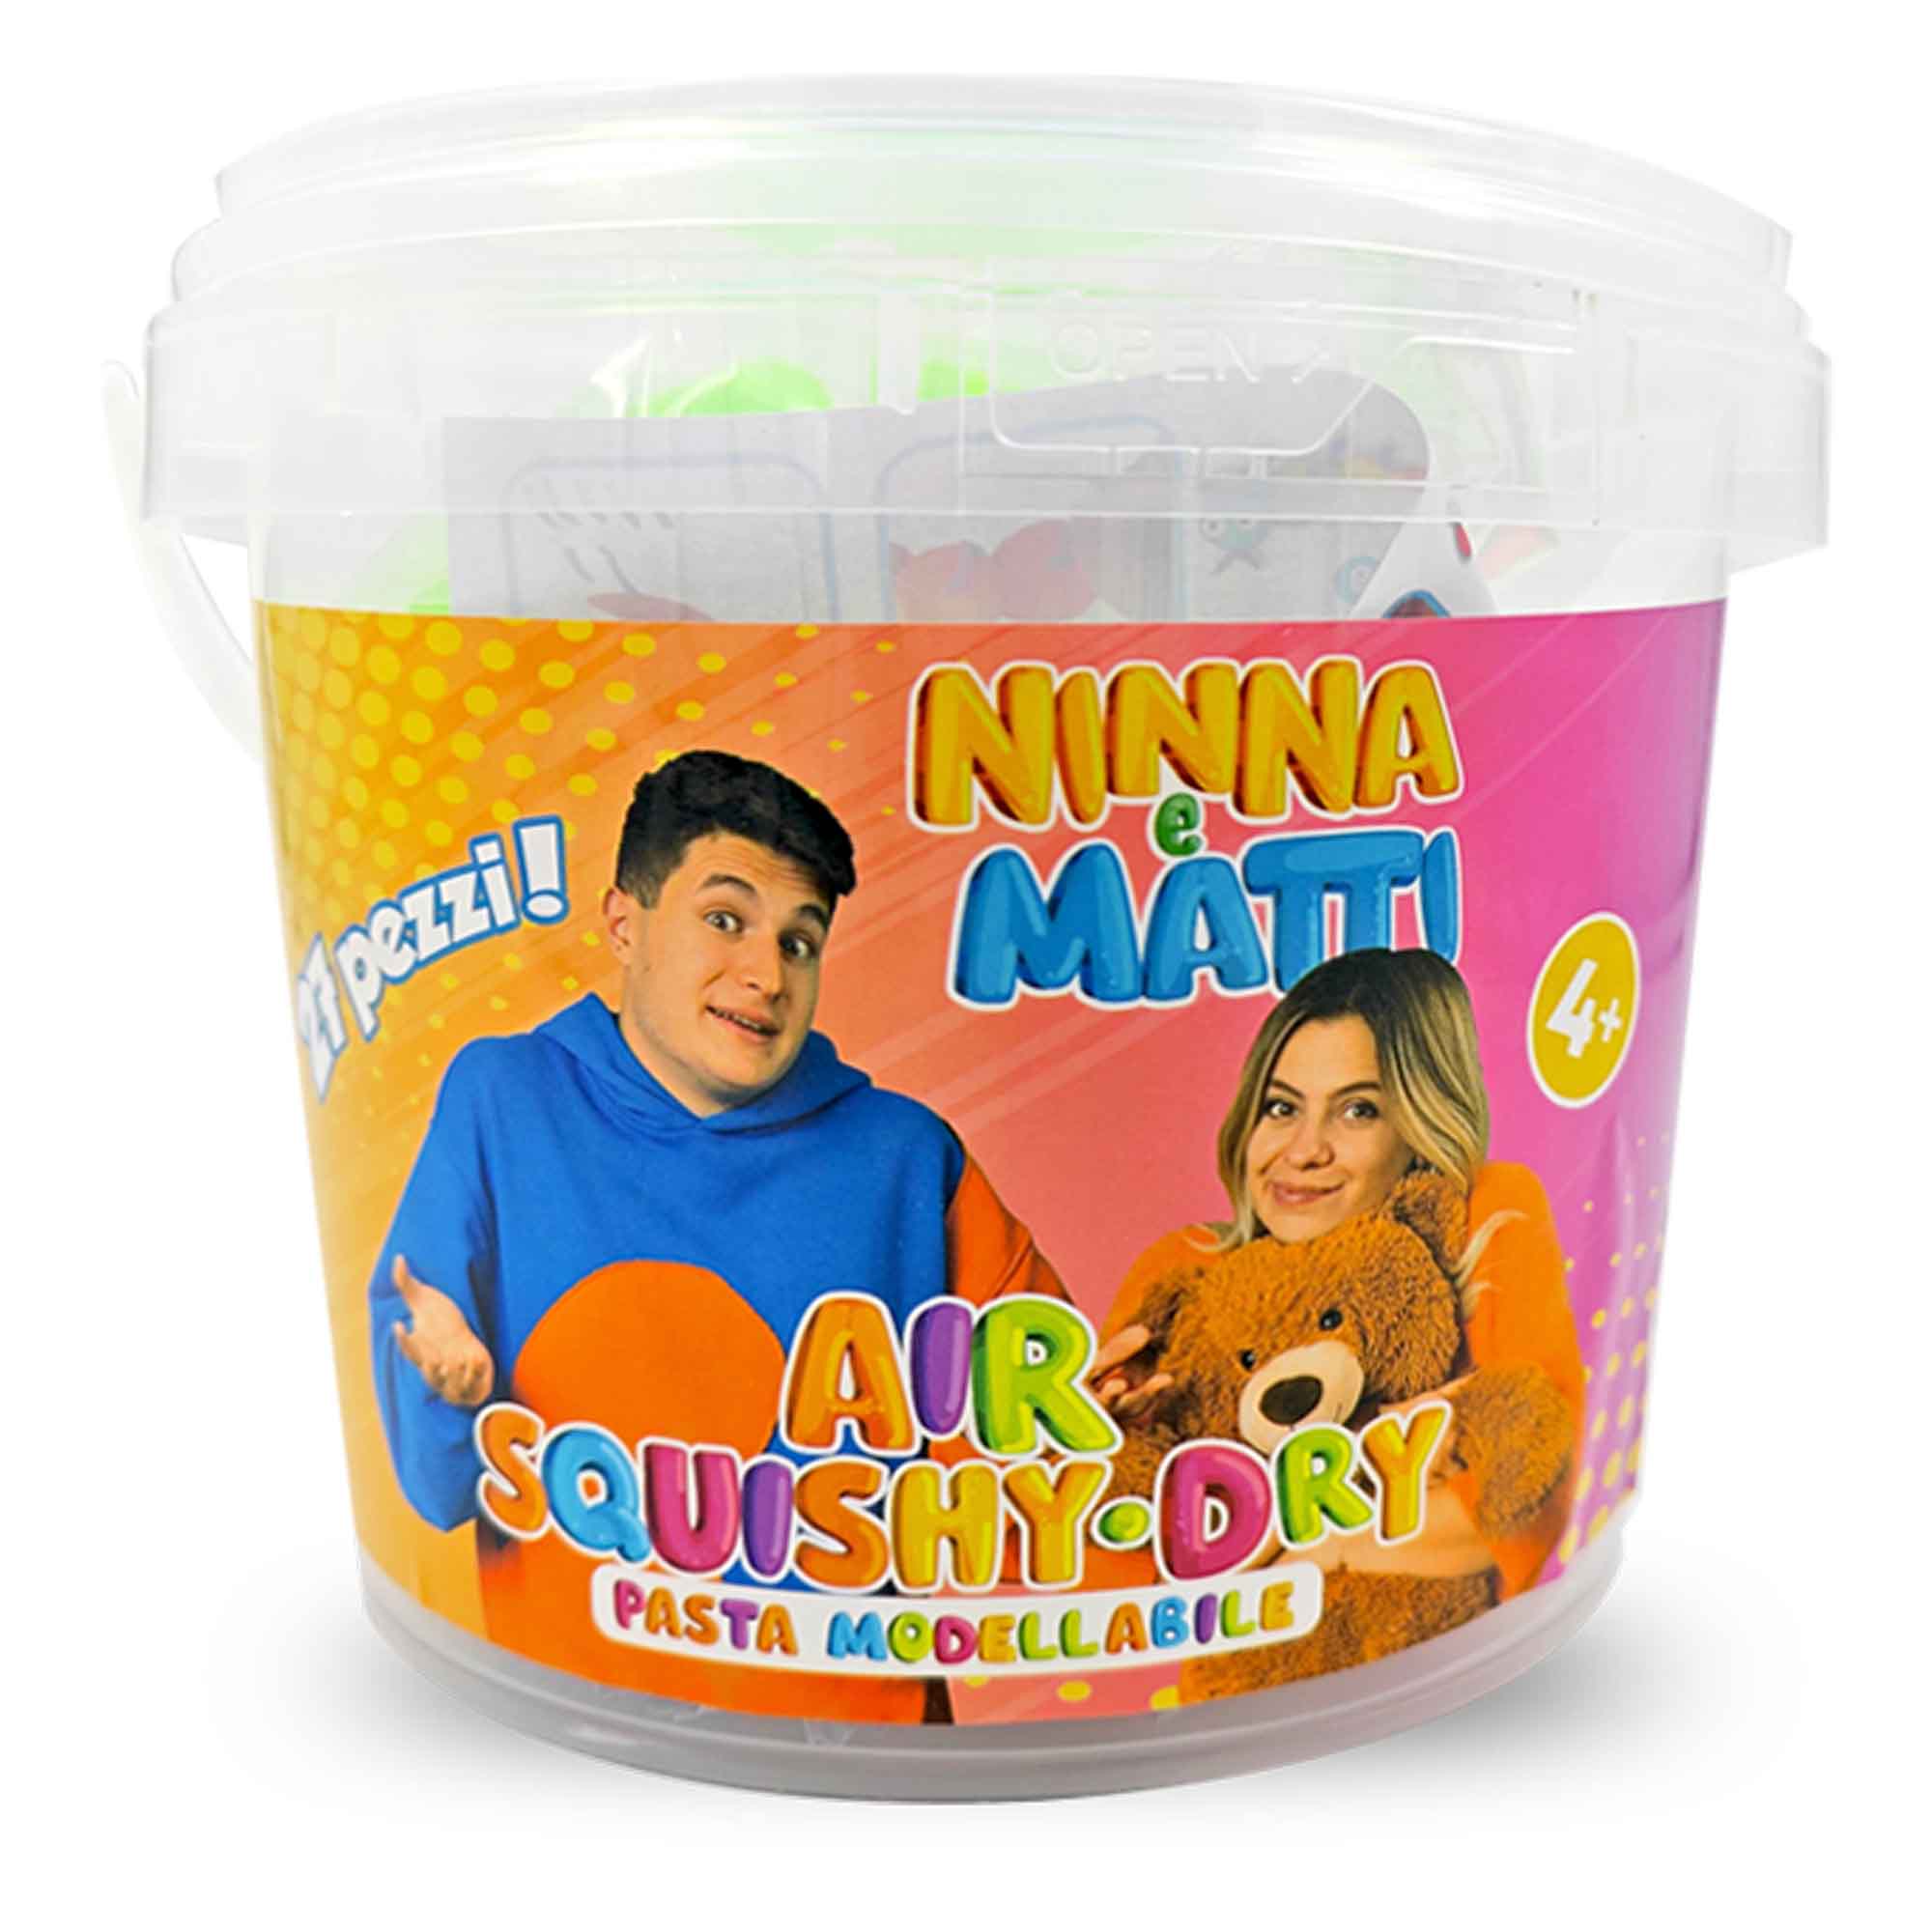 Secchiello pasta modellabile Ninna e Matti per bambini - Ninna e Matti Shop